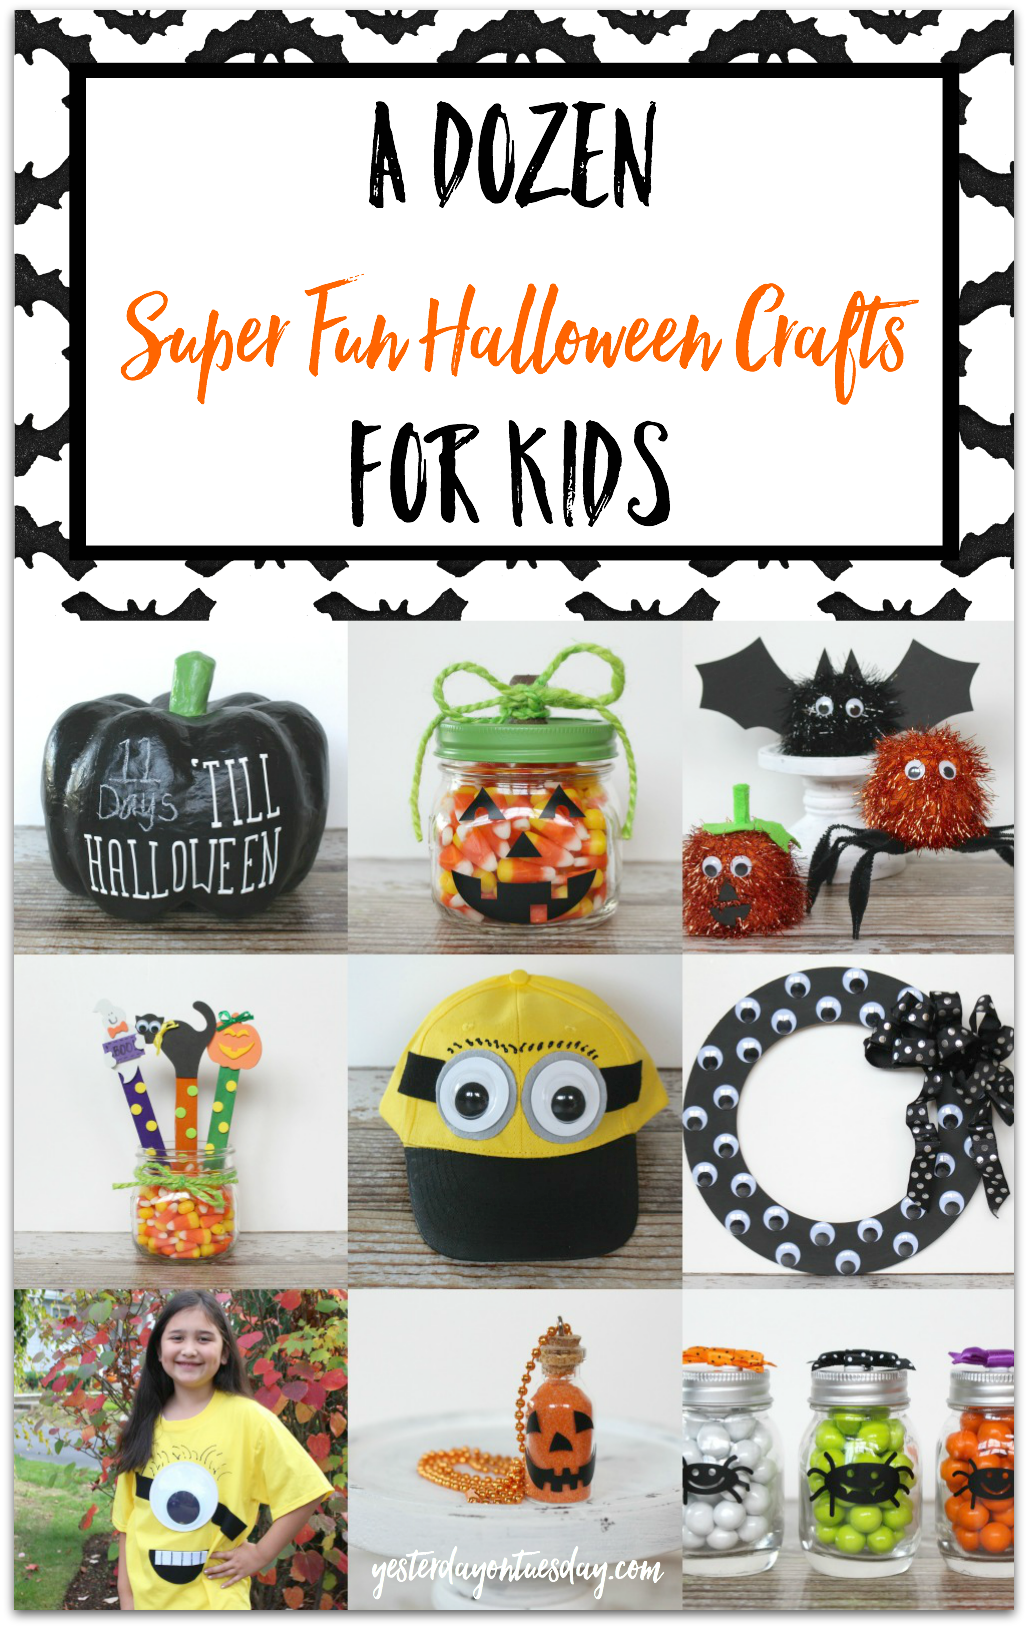 A Dozen Halloween Crafts for Kids